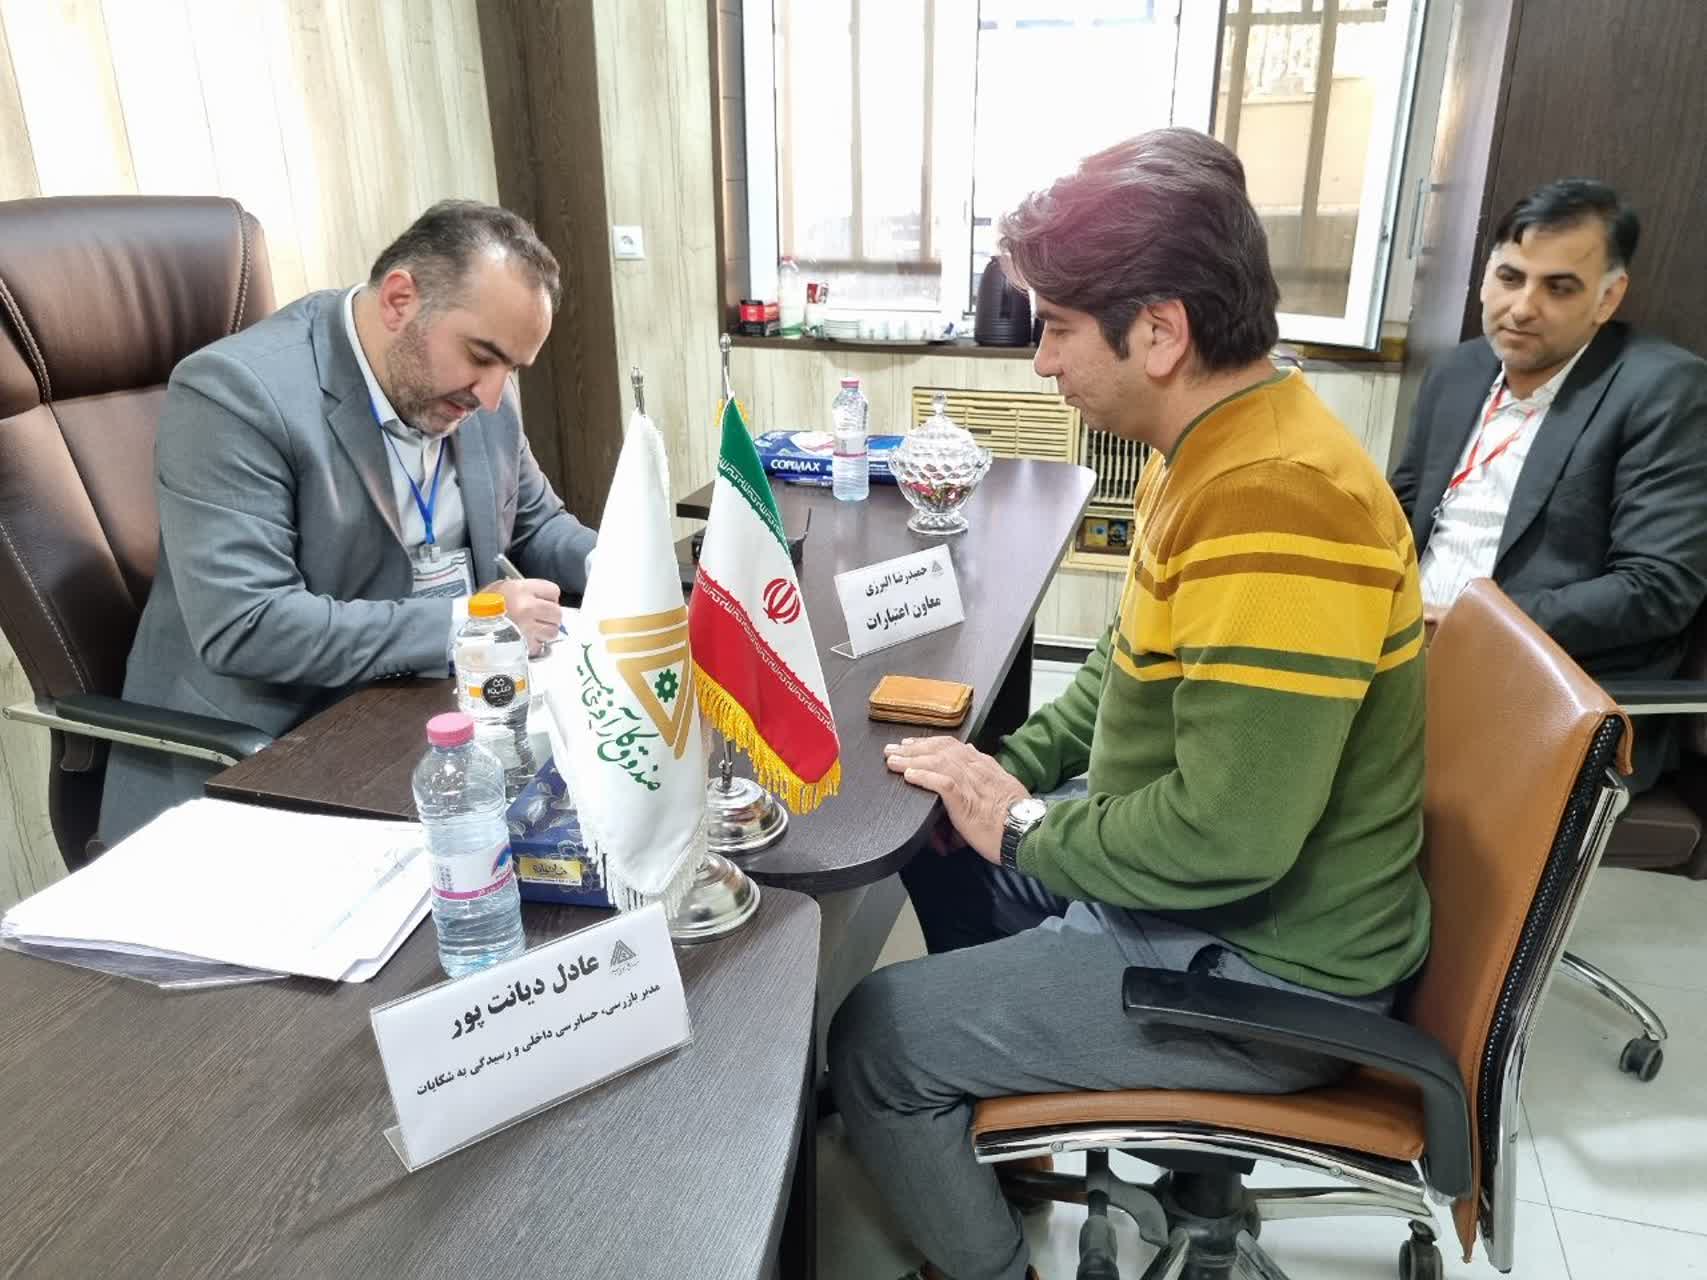 دریافت بیش از 100 درخواست تسهیلات اشتغال در سفر دوم رئیس جمهور به استان بوشهر